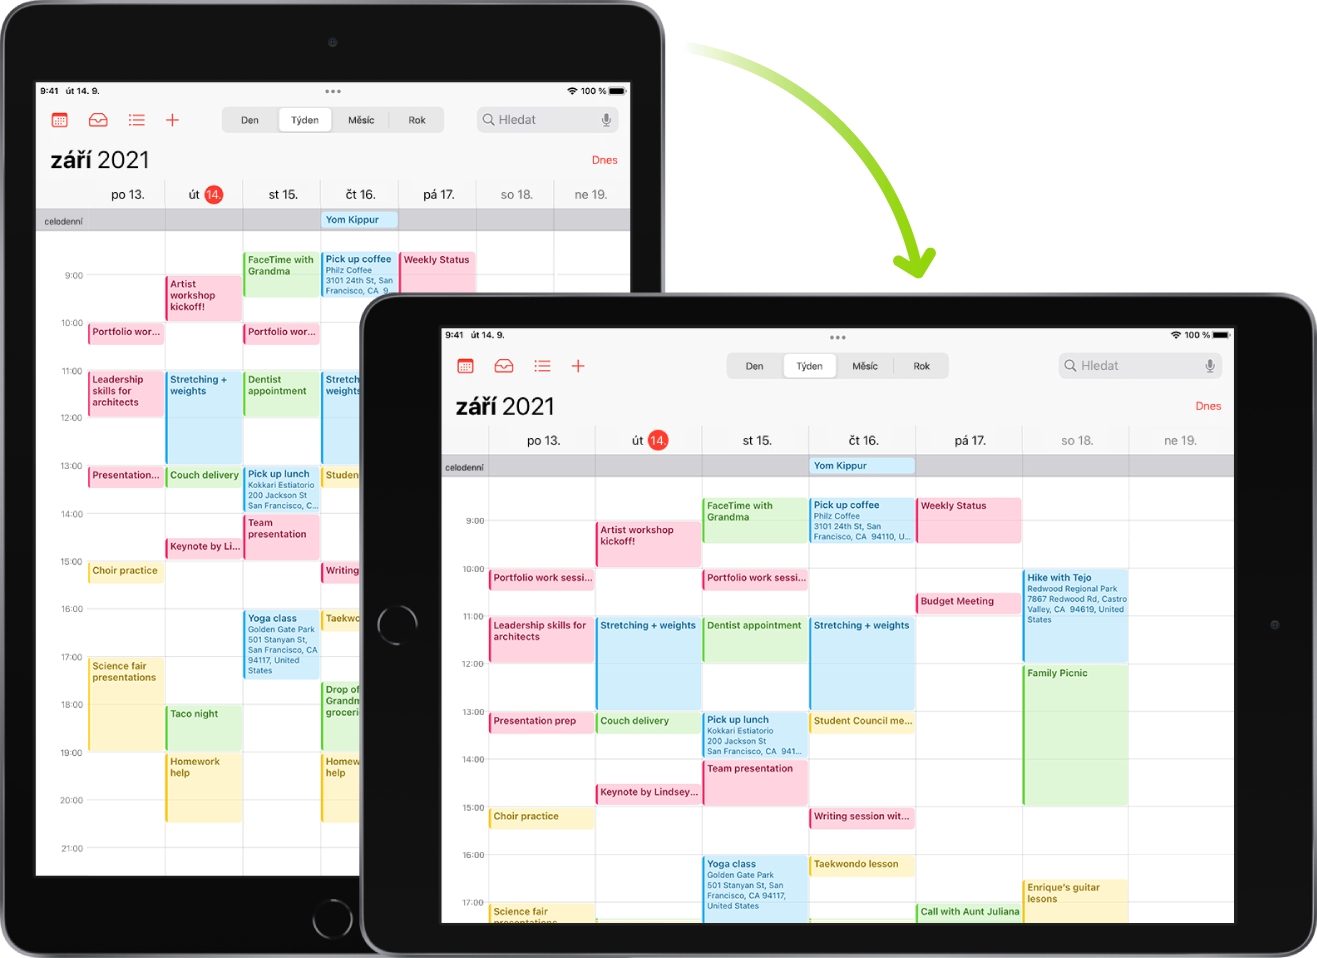 Na pozadí je vidět iPad s obrazovkou aplikace Kalendář v orientaci na výšku; v popředí je tentýž iPad, ale otočený tak, aby se obrazovka aplikace Kalendář zobrazovala na šířku